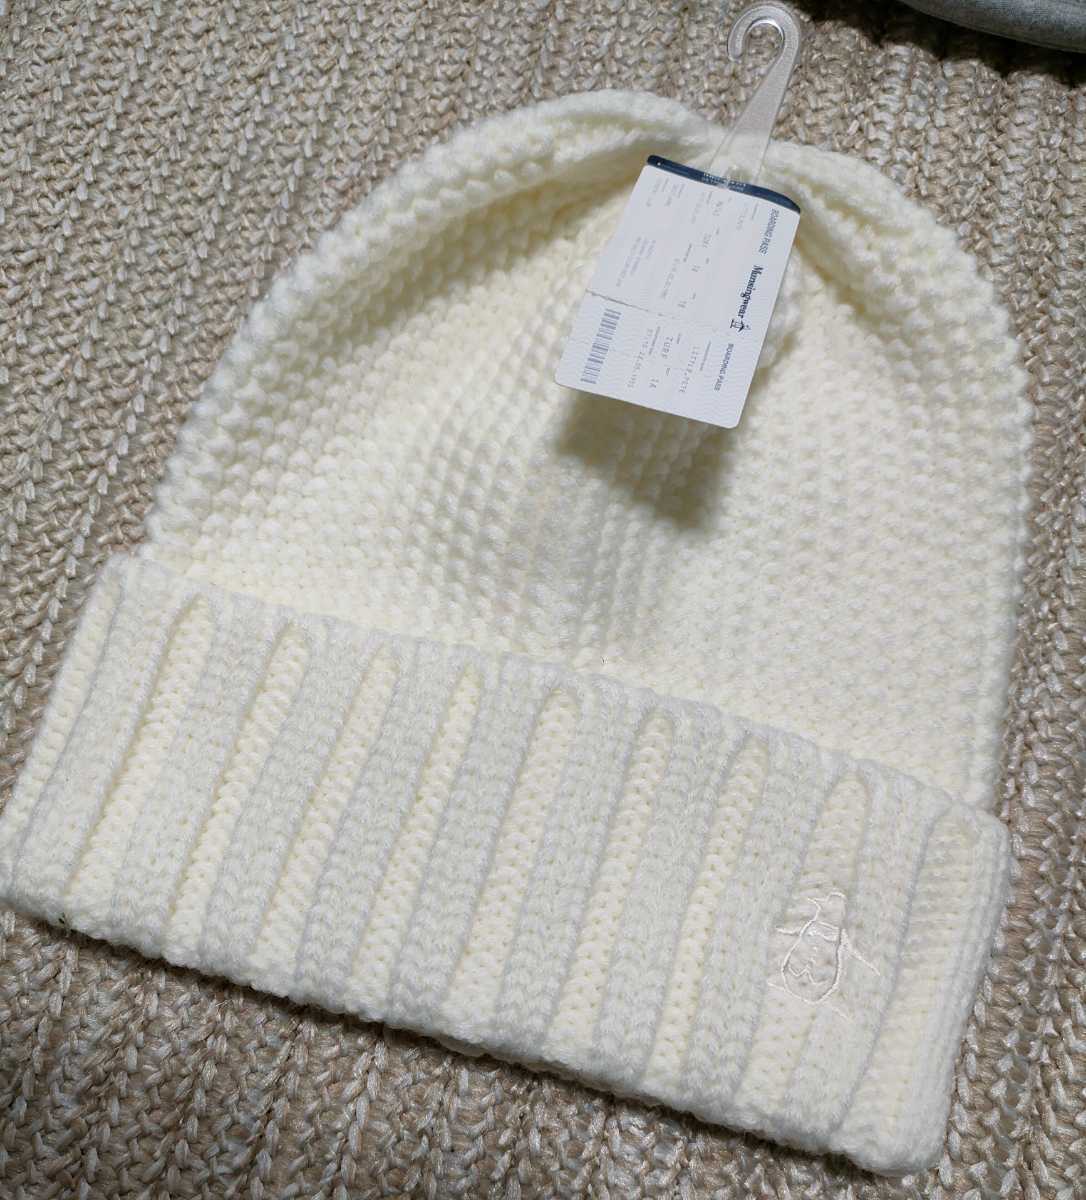 Новая цена списка 4730 Mansing вязаная кепка белая бесплатная размер белая вязаная шляпа Пол Мансингвор Гольф Мир